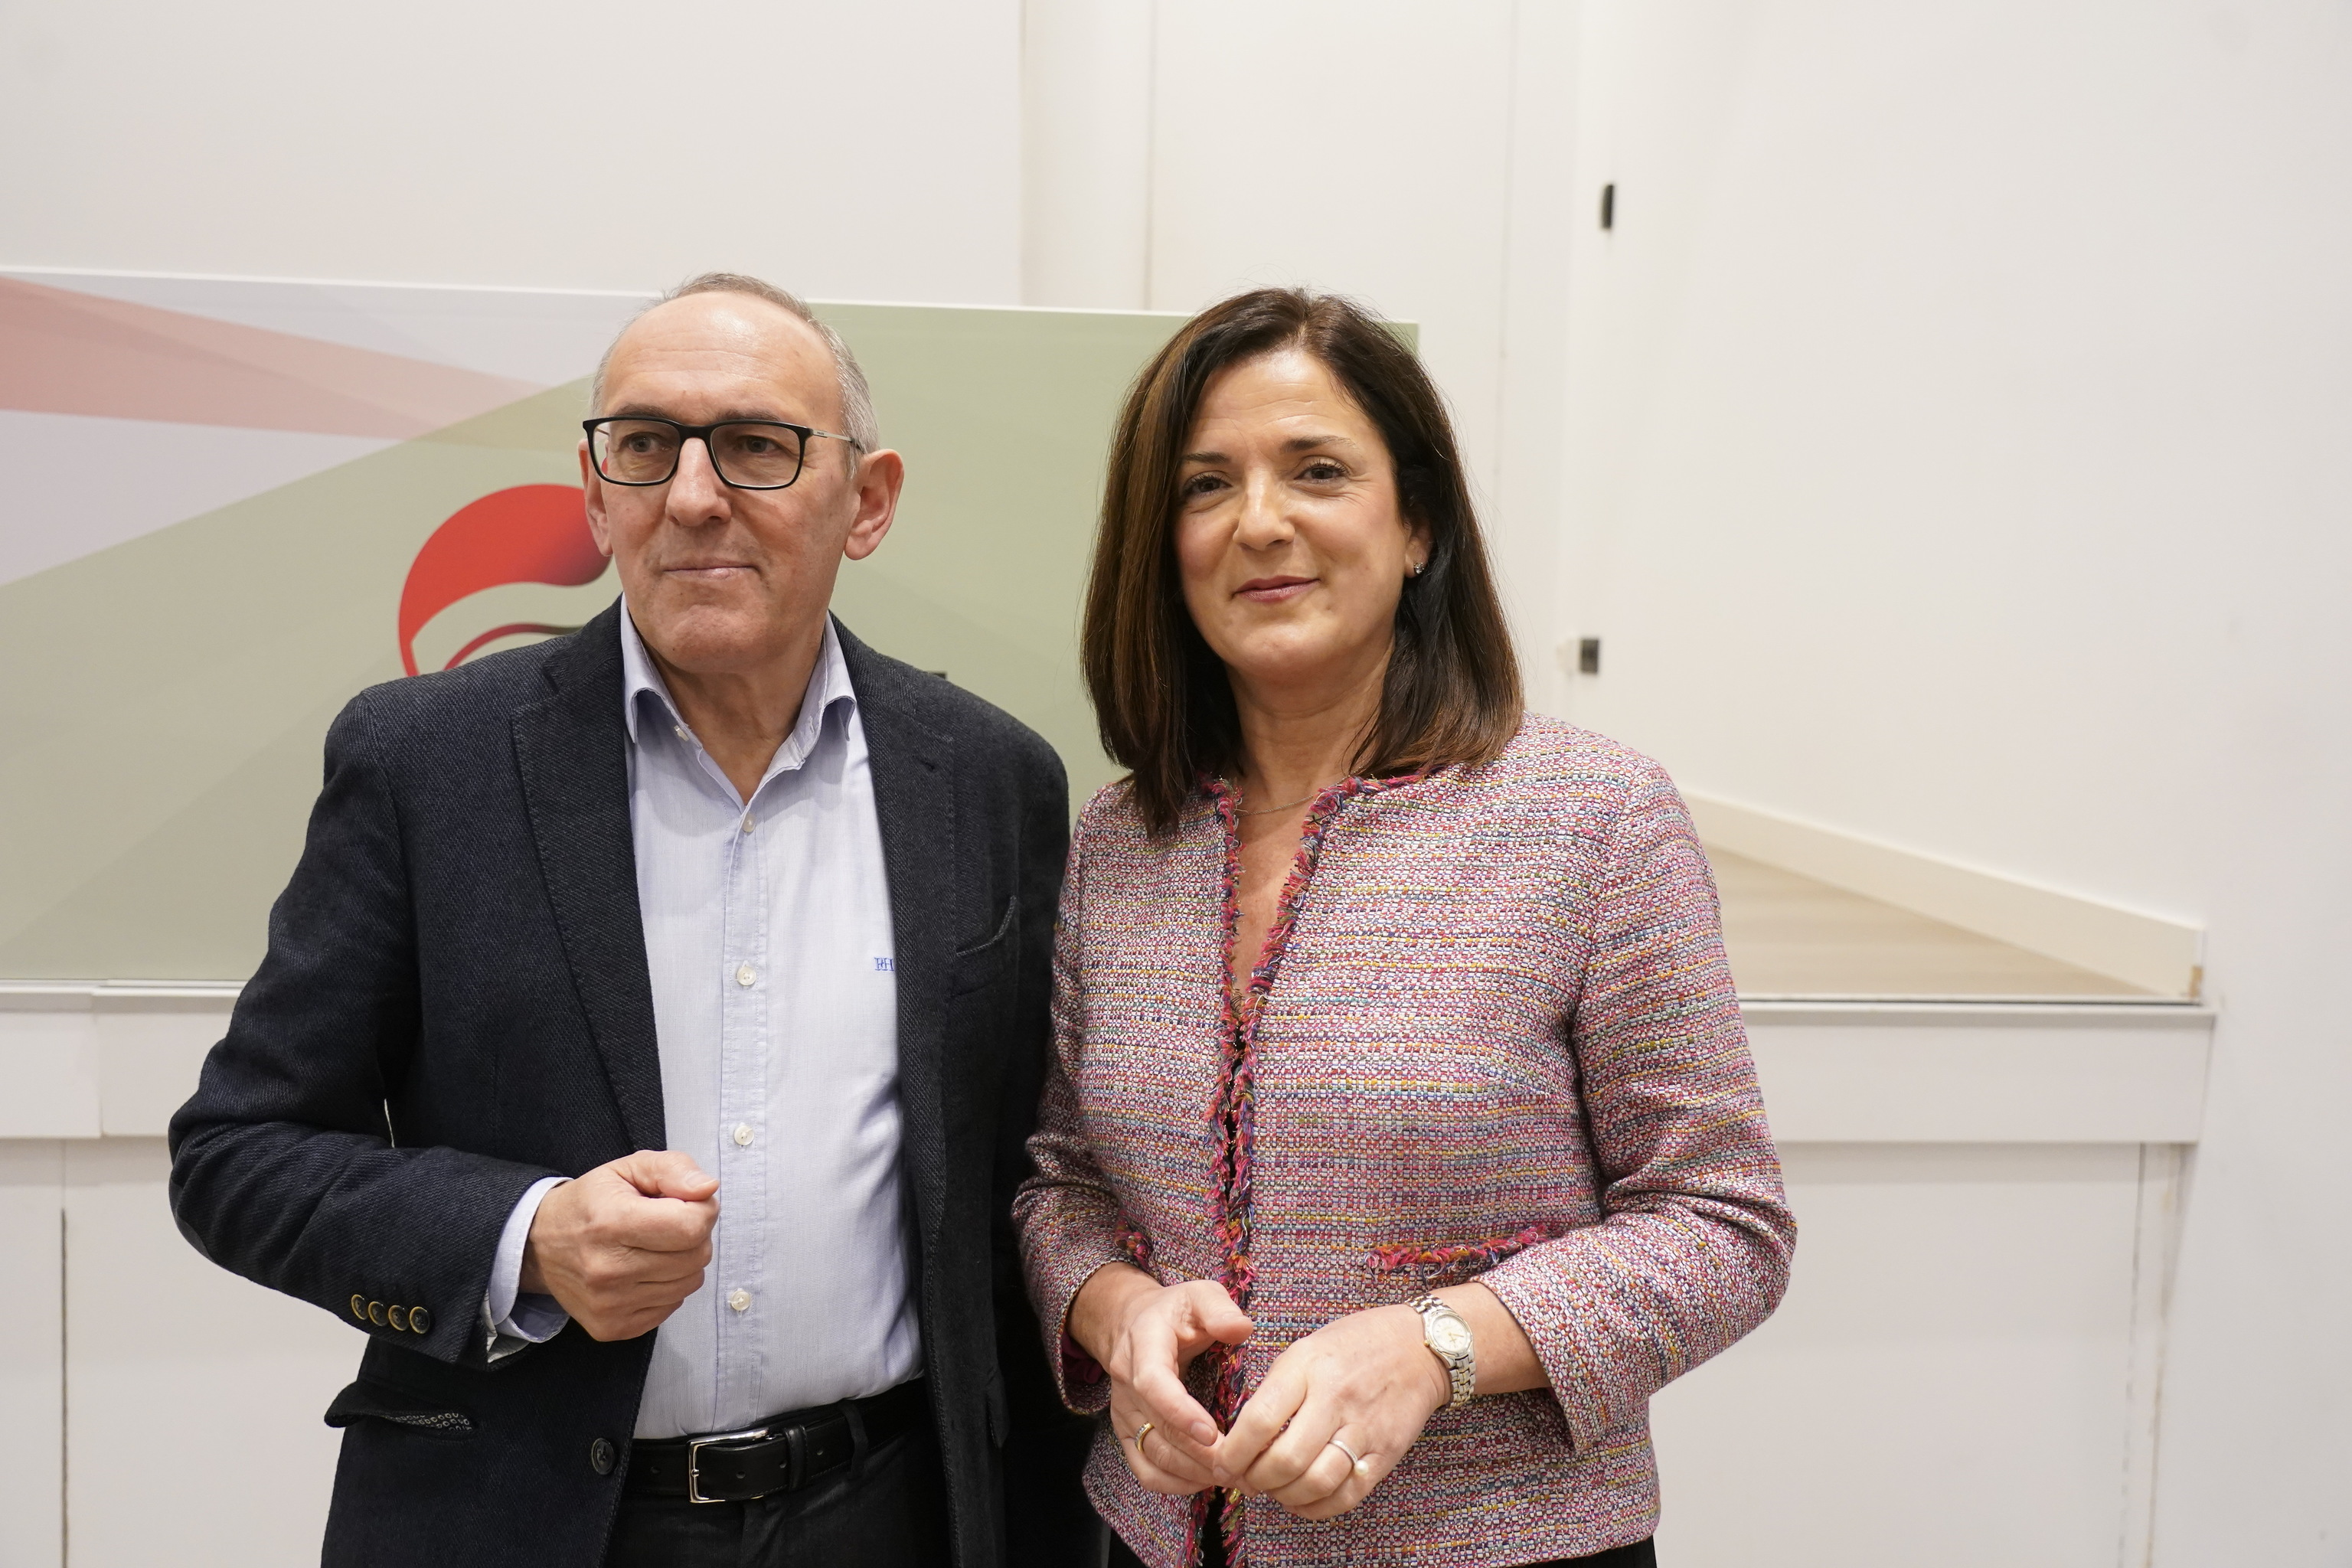 La consejera de Justicia y candidata del PNV en Vitoria Beatriz Artolazabal junto a su compaero Ramiro Gonzlez.